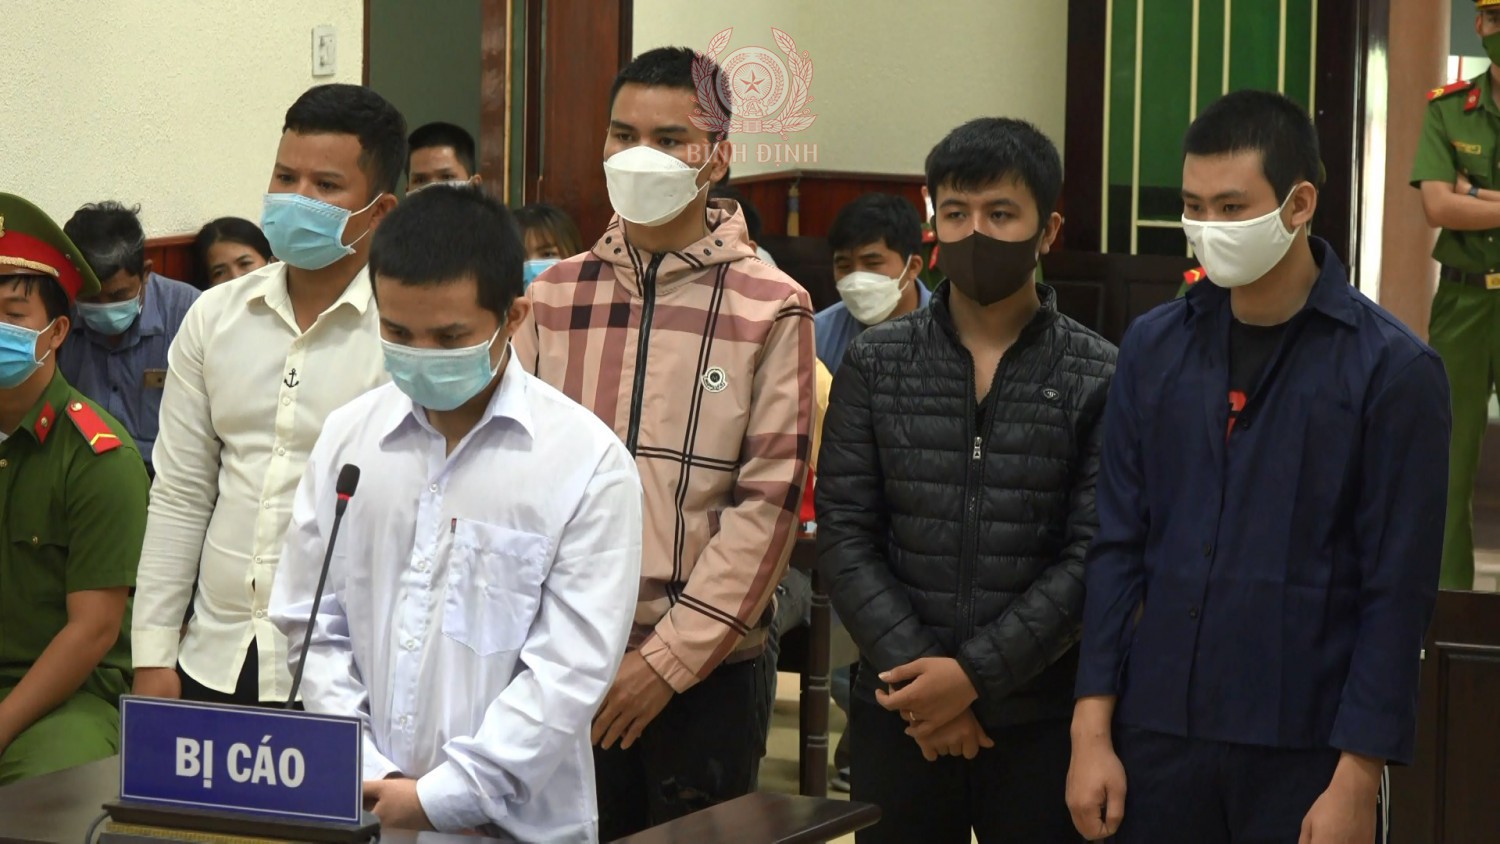 Xét xử vụ án giết người xảy ra tại phường Bình Định